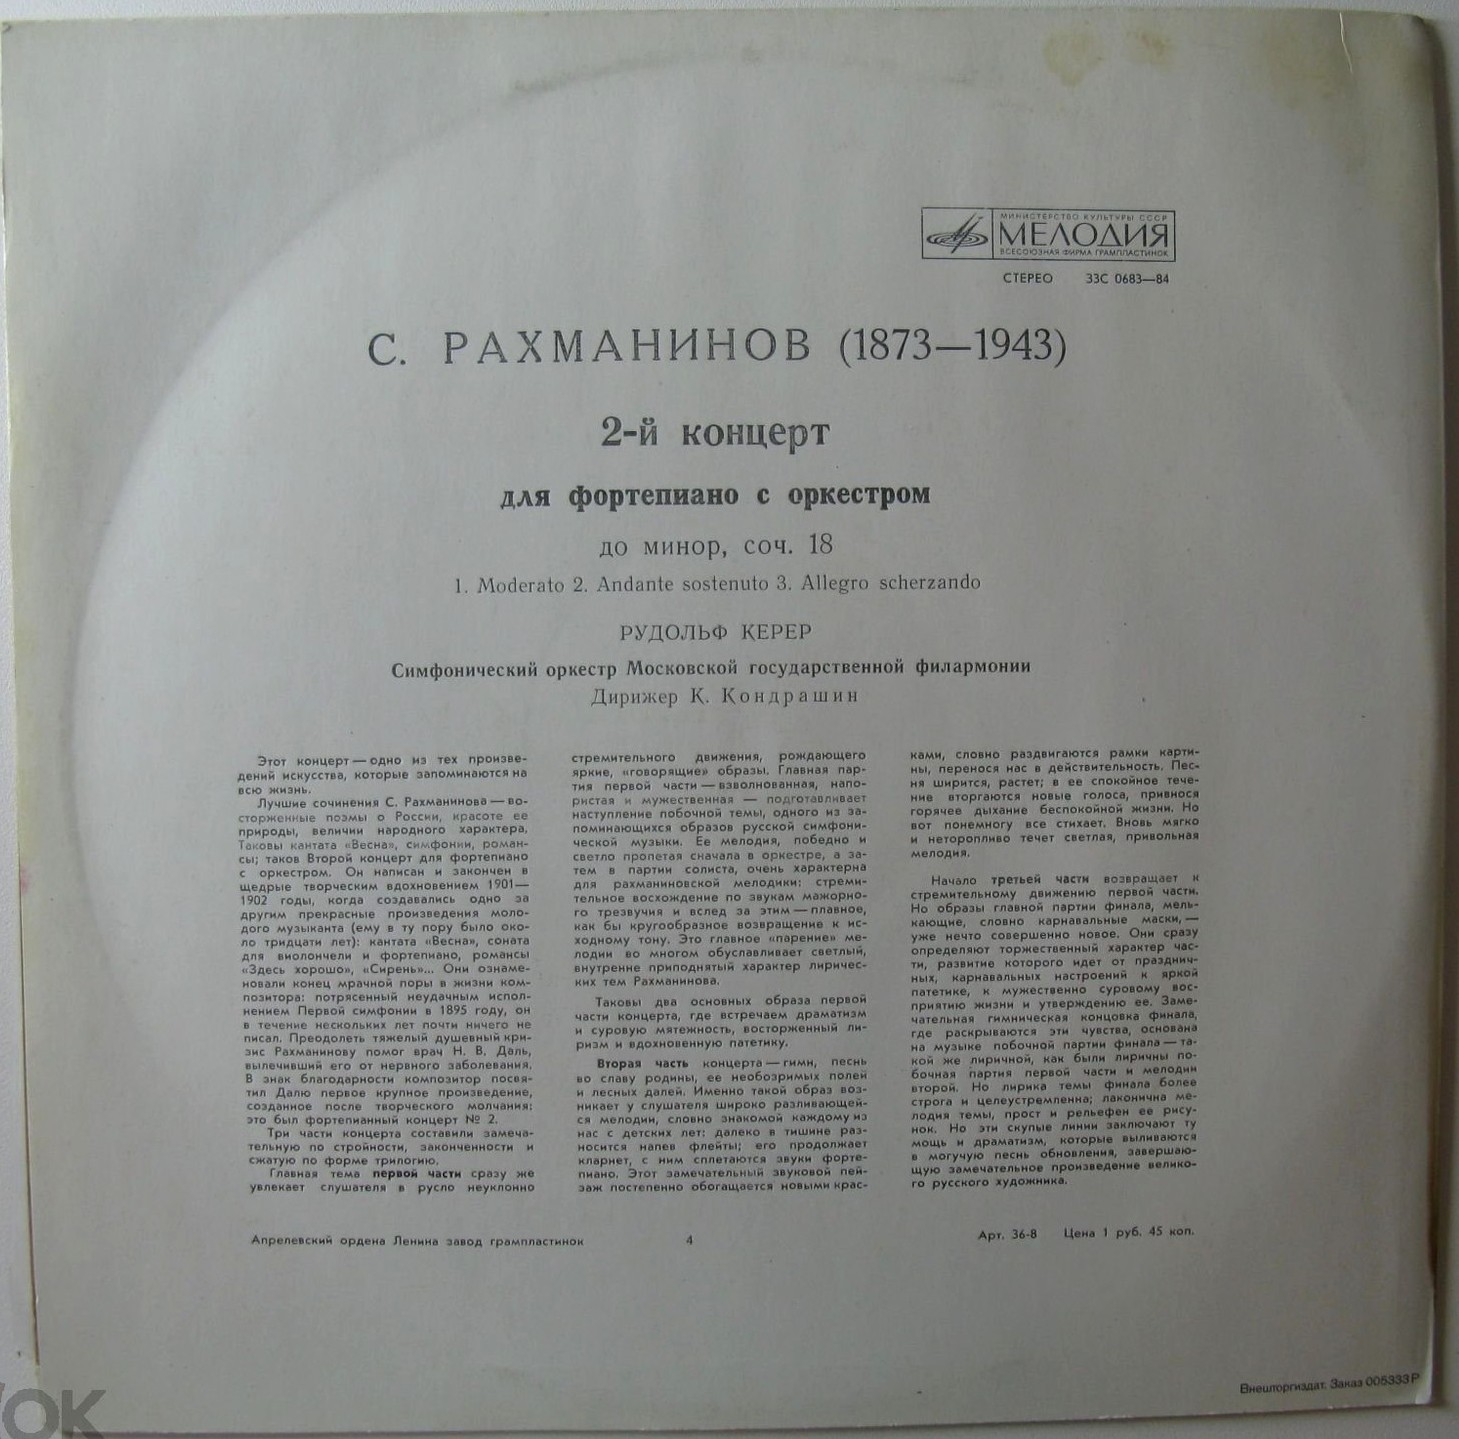 С. Рахманинов: Концерт № 2 для фортепиано с оркестром (Рудольф Керер, К. Кондрашин)